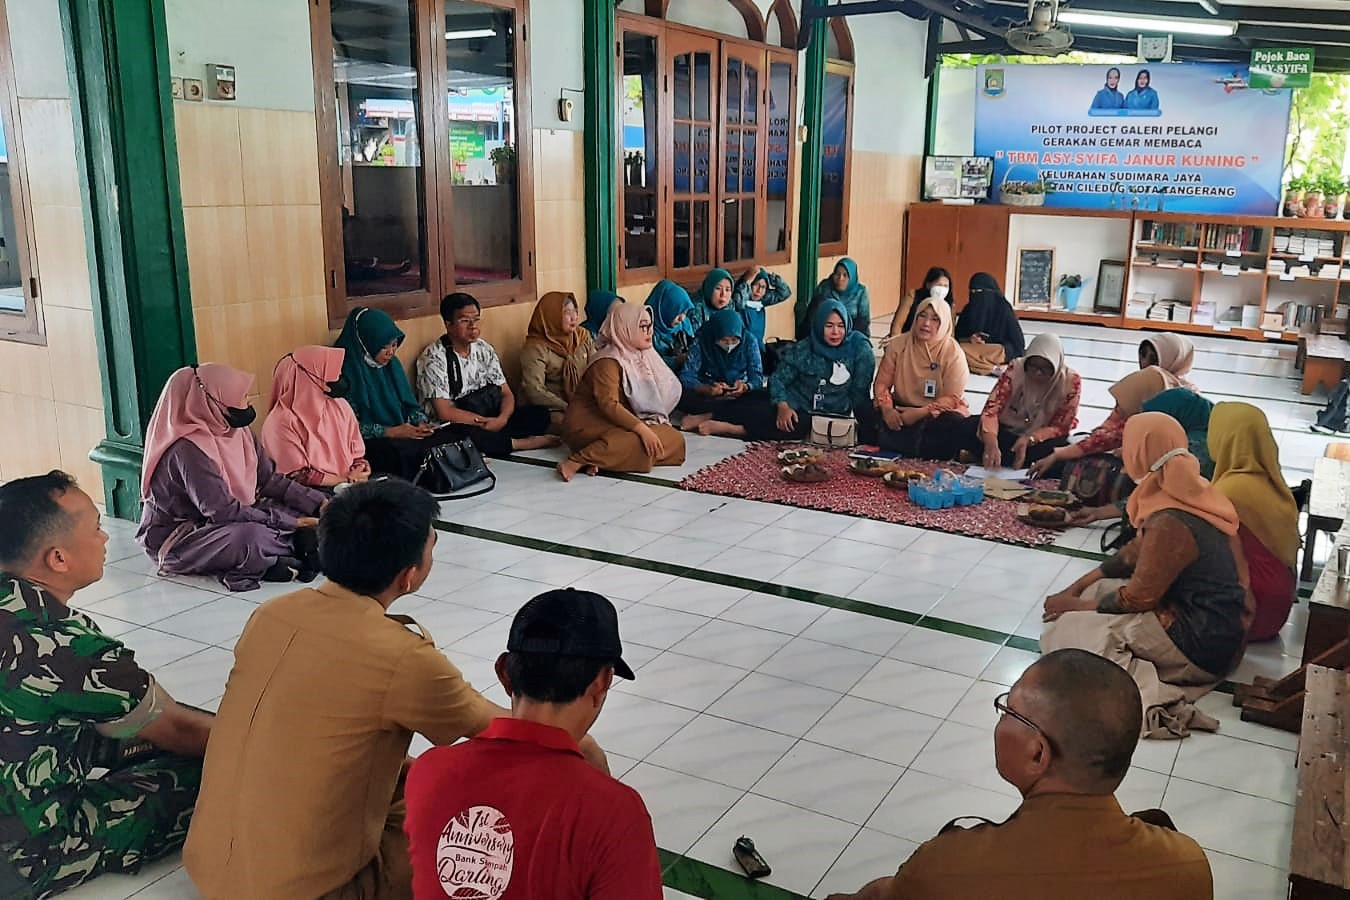 Kegiatan Pilot Project Gelari Pelangi Gerakan Gemar Membaca Kelurahan Sudimara Jaya